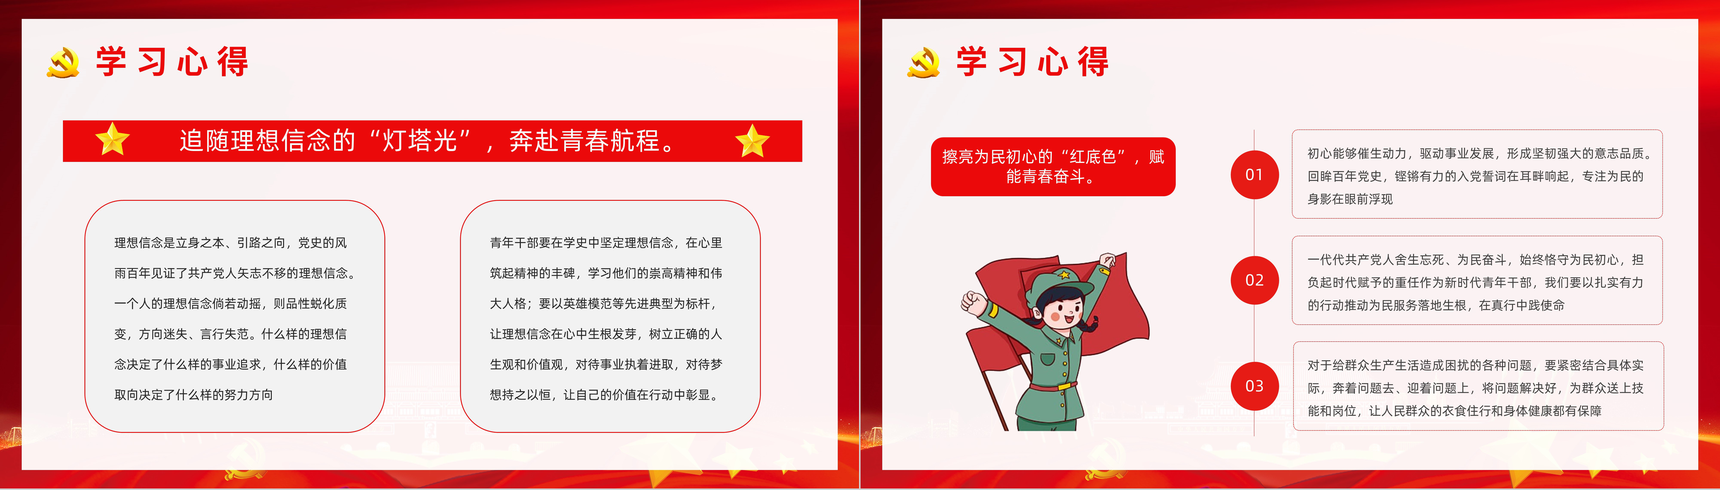 《中国共产党简史》学习基层党政党员学党史悟思想教育专题讲座PPT模板-9